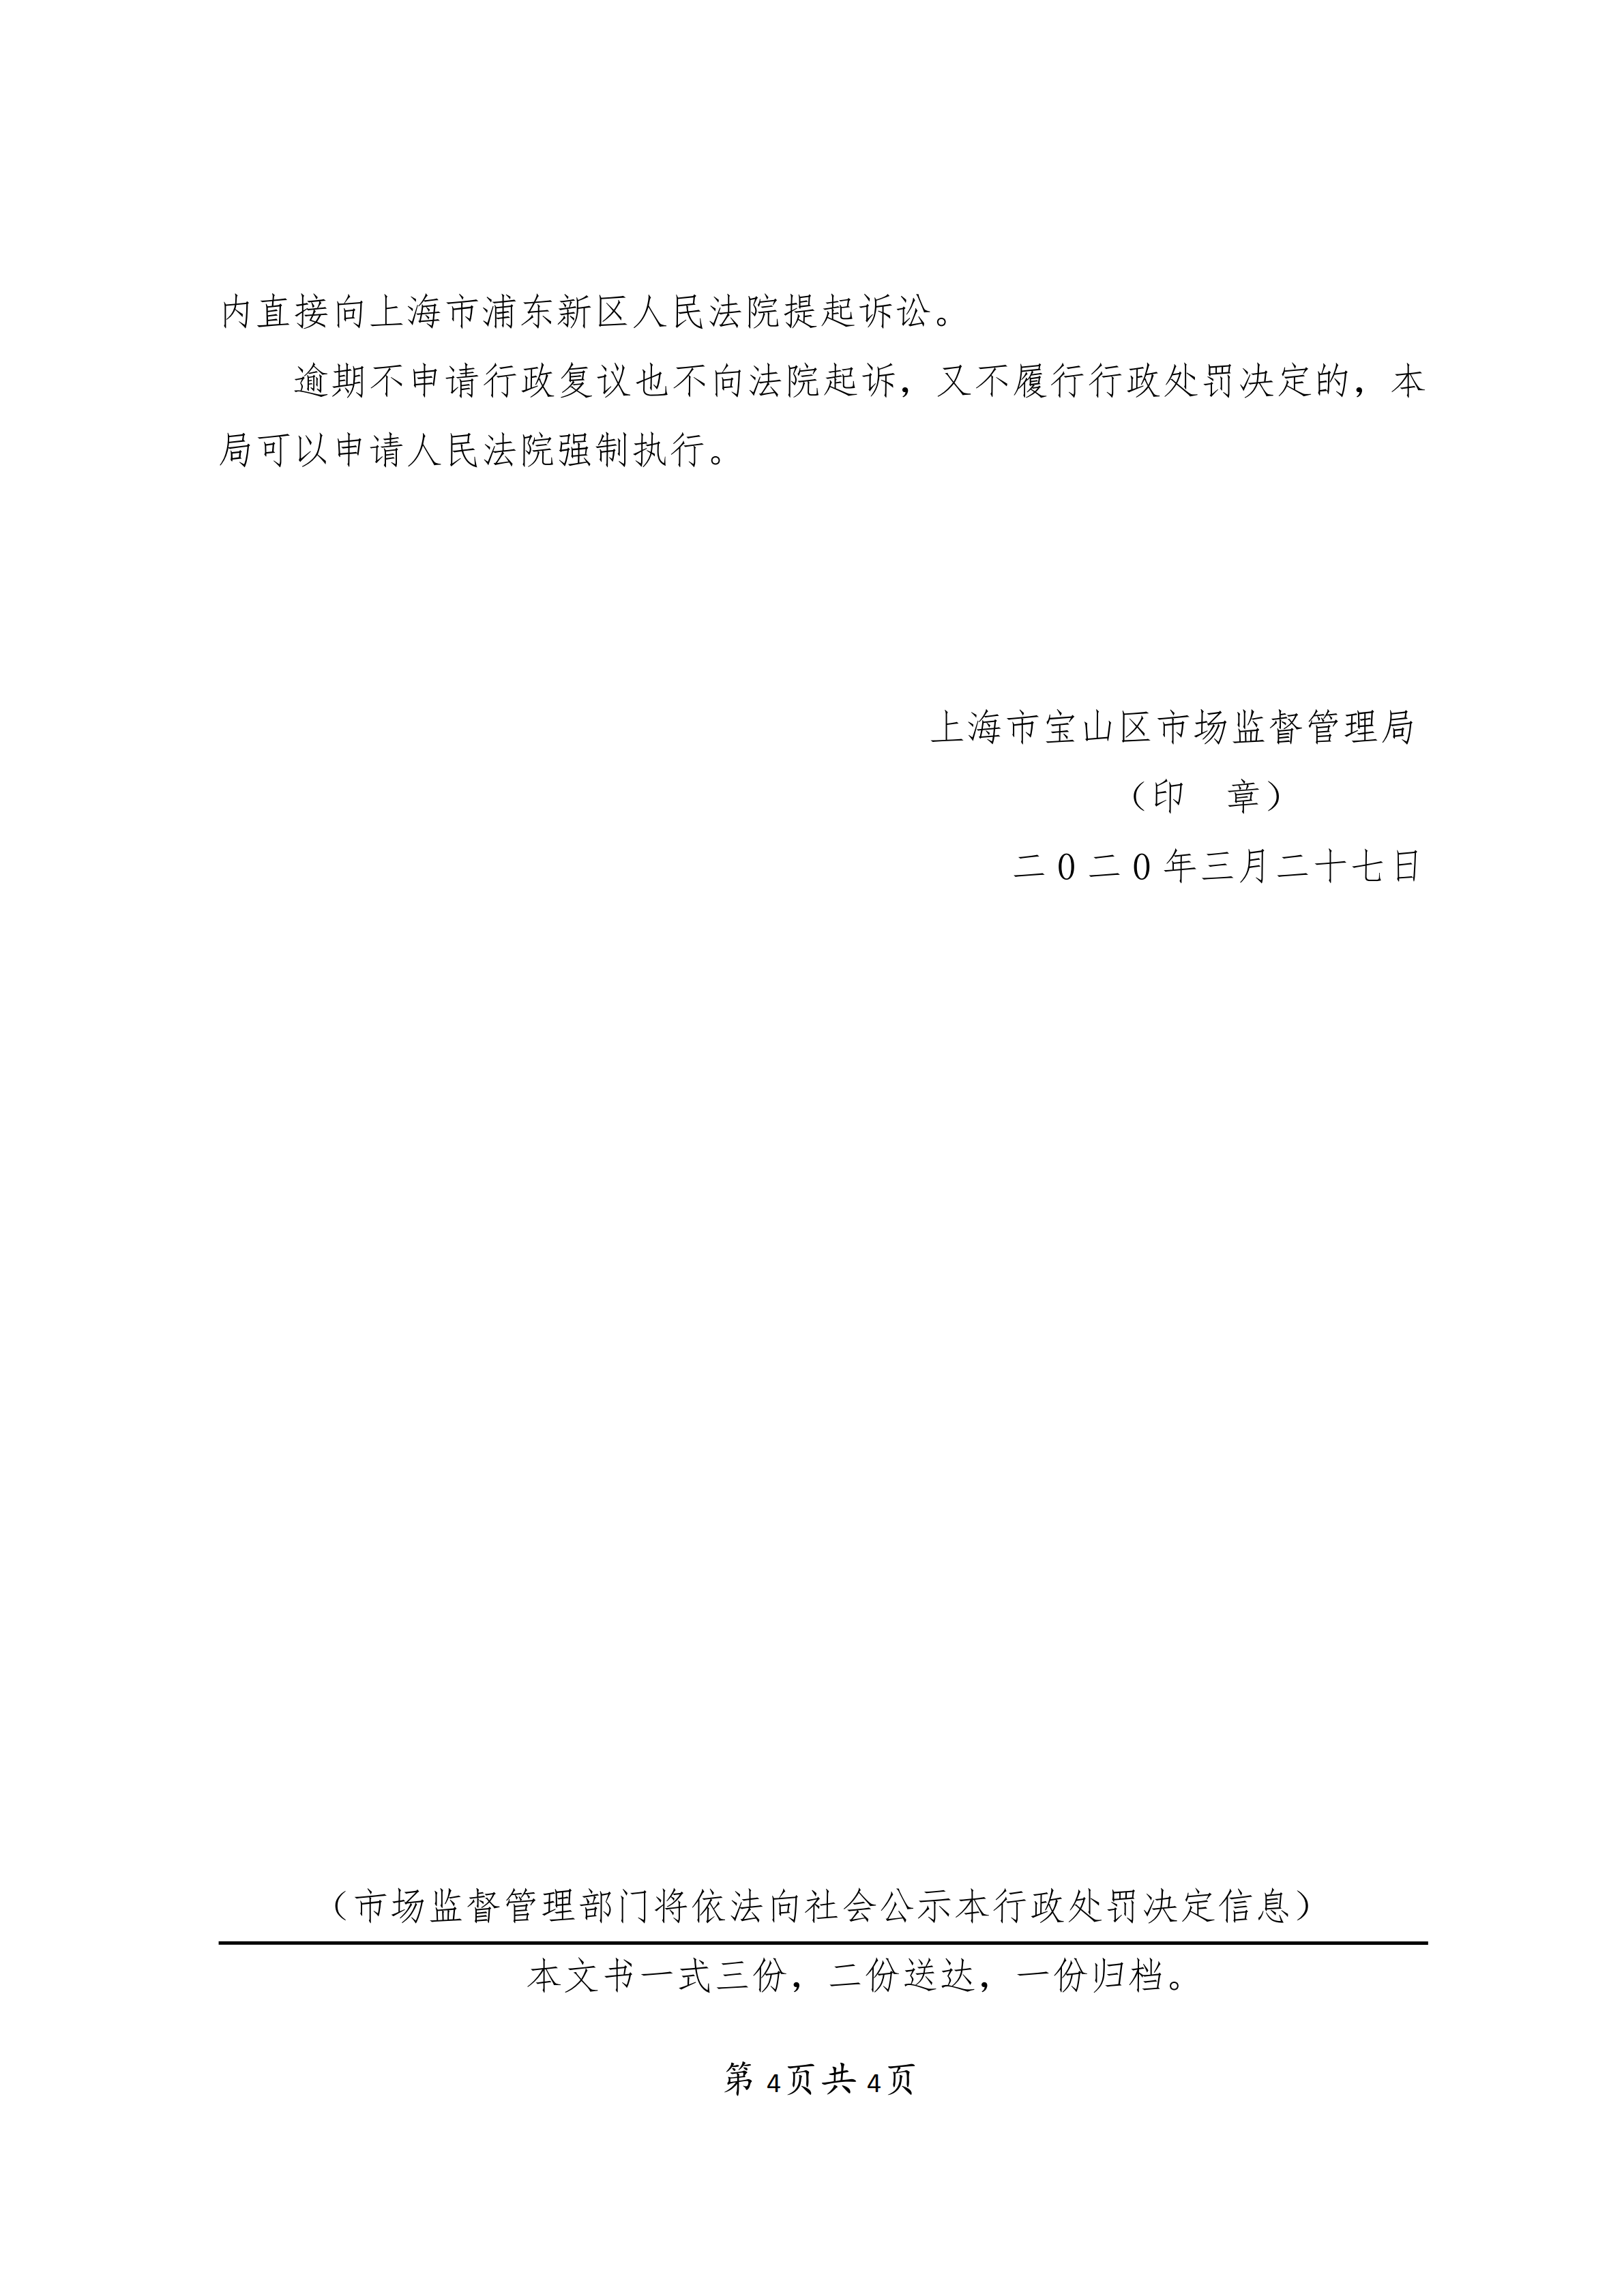 上海梦生殡葬用品销售有限公司不正当竞争案-行政处罚书(1)_03.png